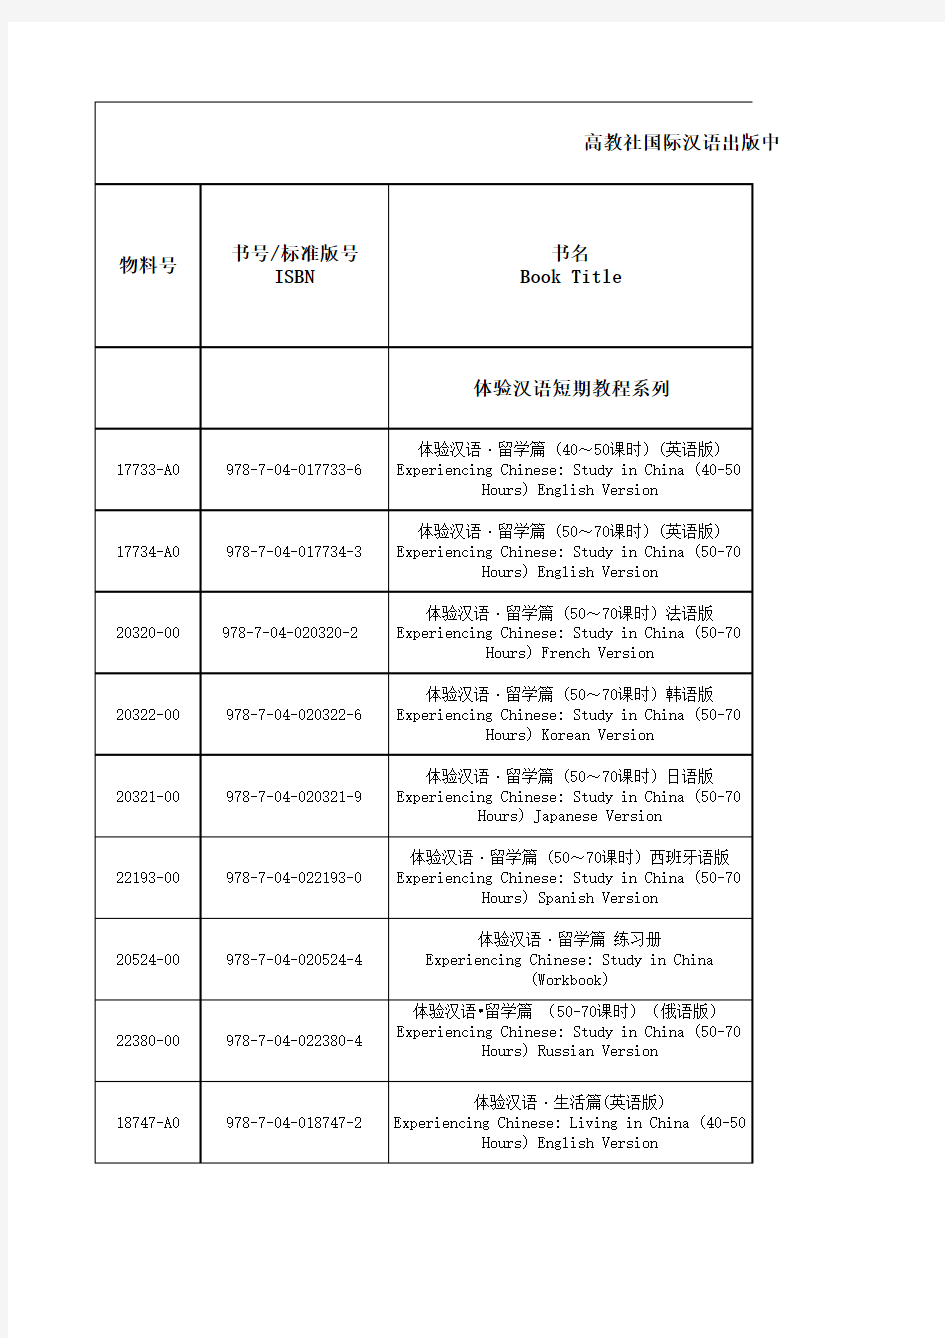 高等教育出版社对外汉语书目10.12.02-4